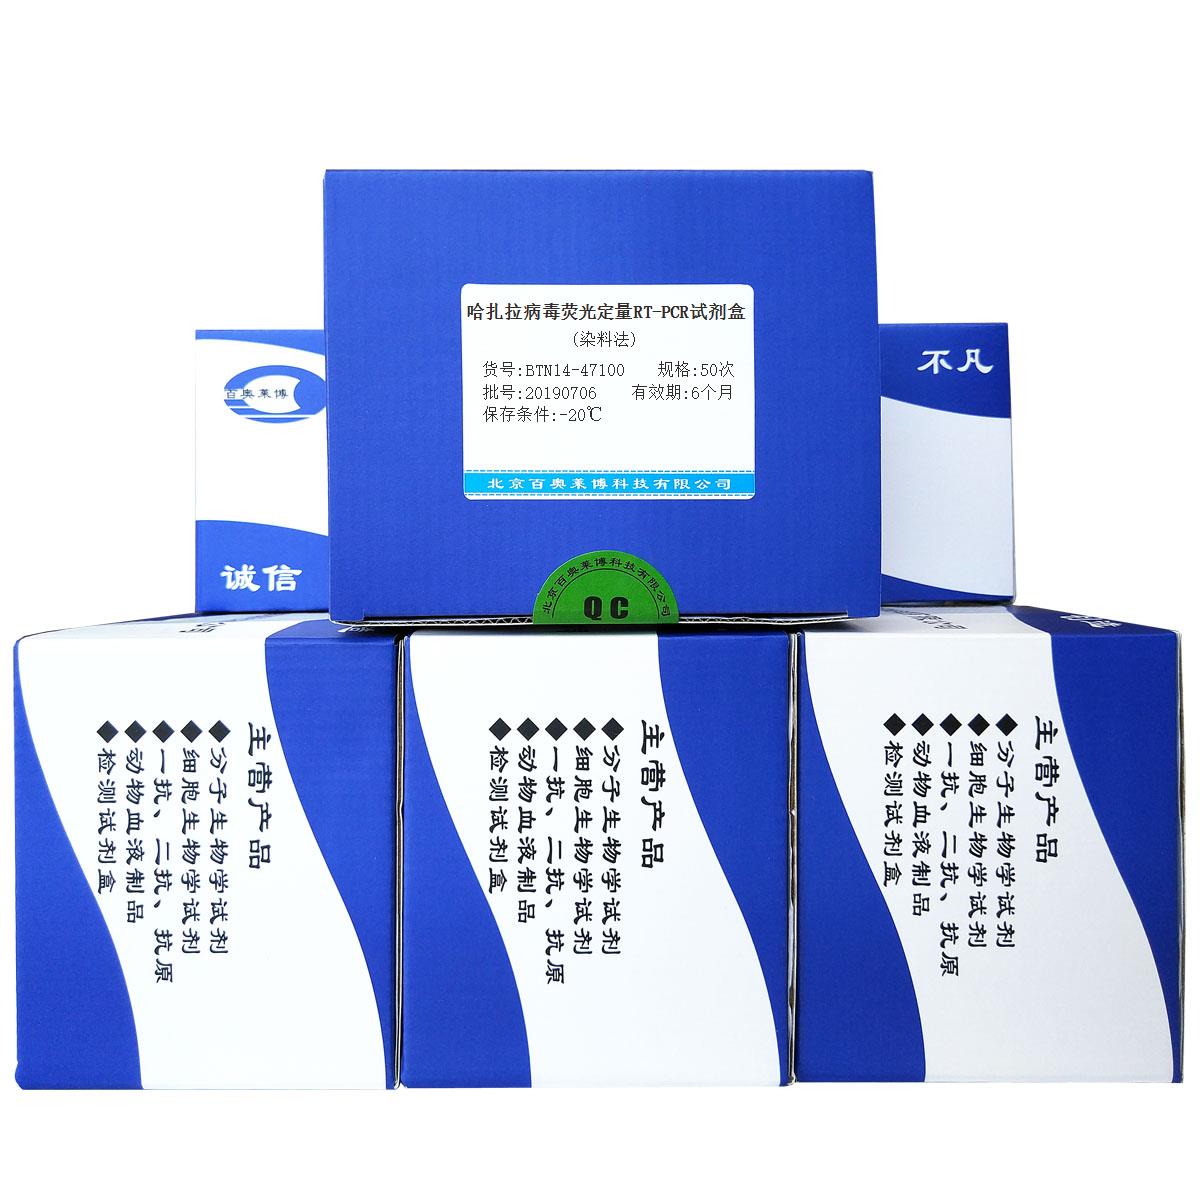 哈扎拉病毒荧光定量RT-PCR试剂盒(染料法)